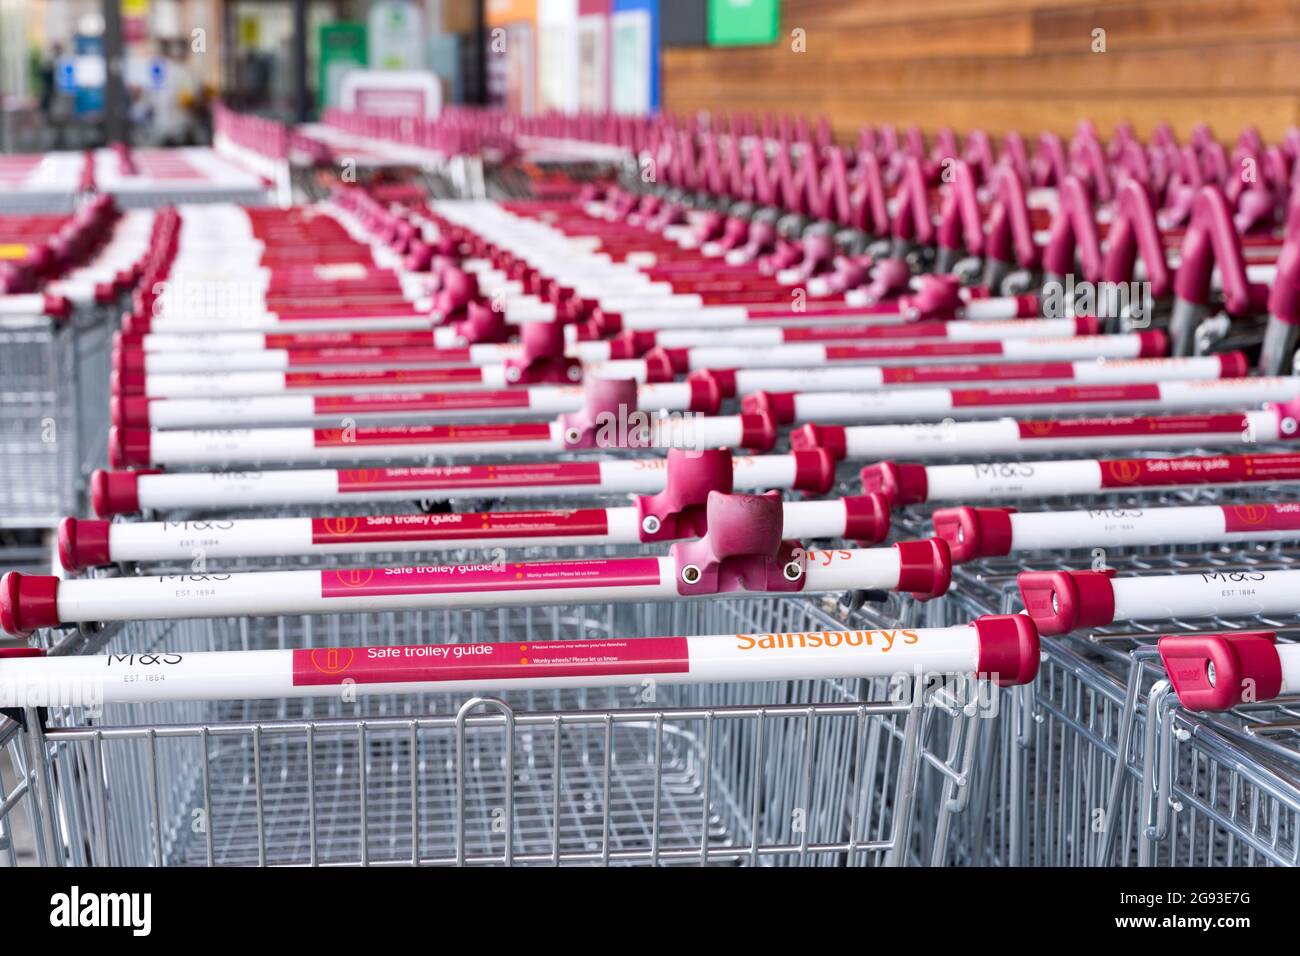 Supermarkt Trolleys Park, Mangel an Käufern aufgrund von Lebensmittelknappheit Lieferungen London England Europa Pingdemic führte zu Mitarbeitern in Isolation zu Hause Stockfoto